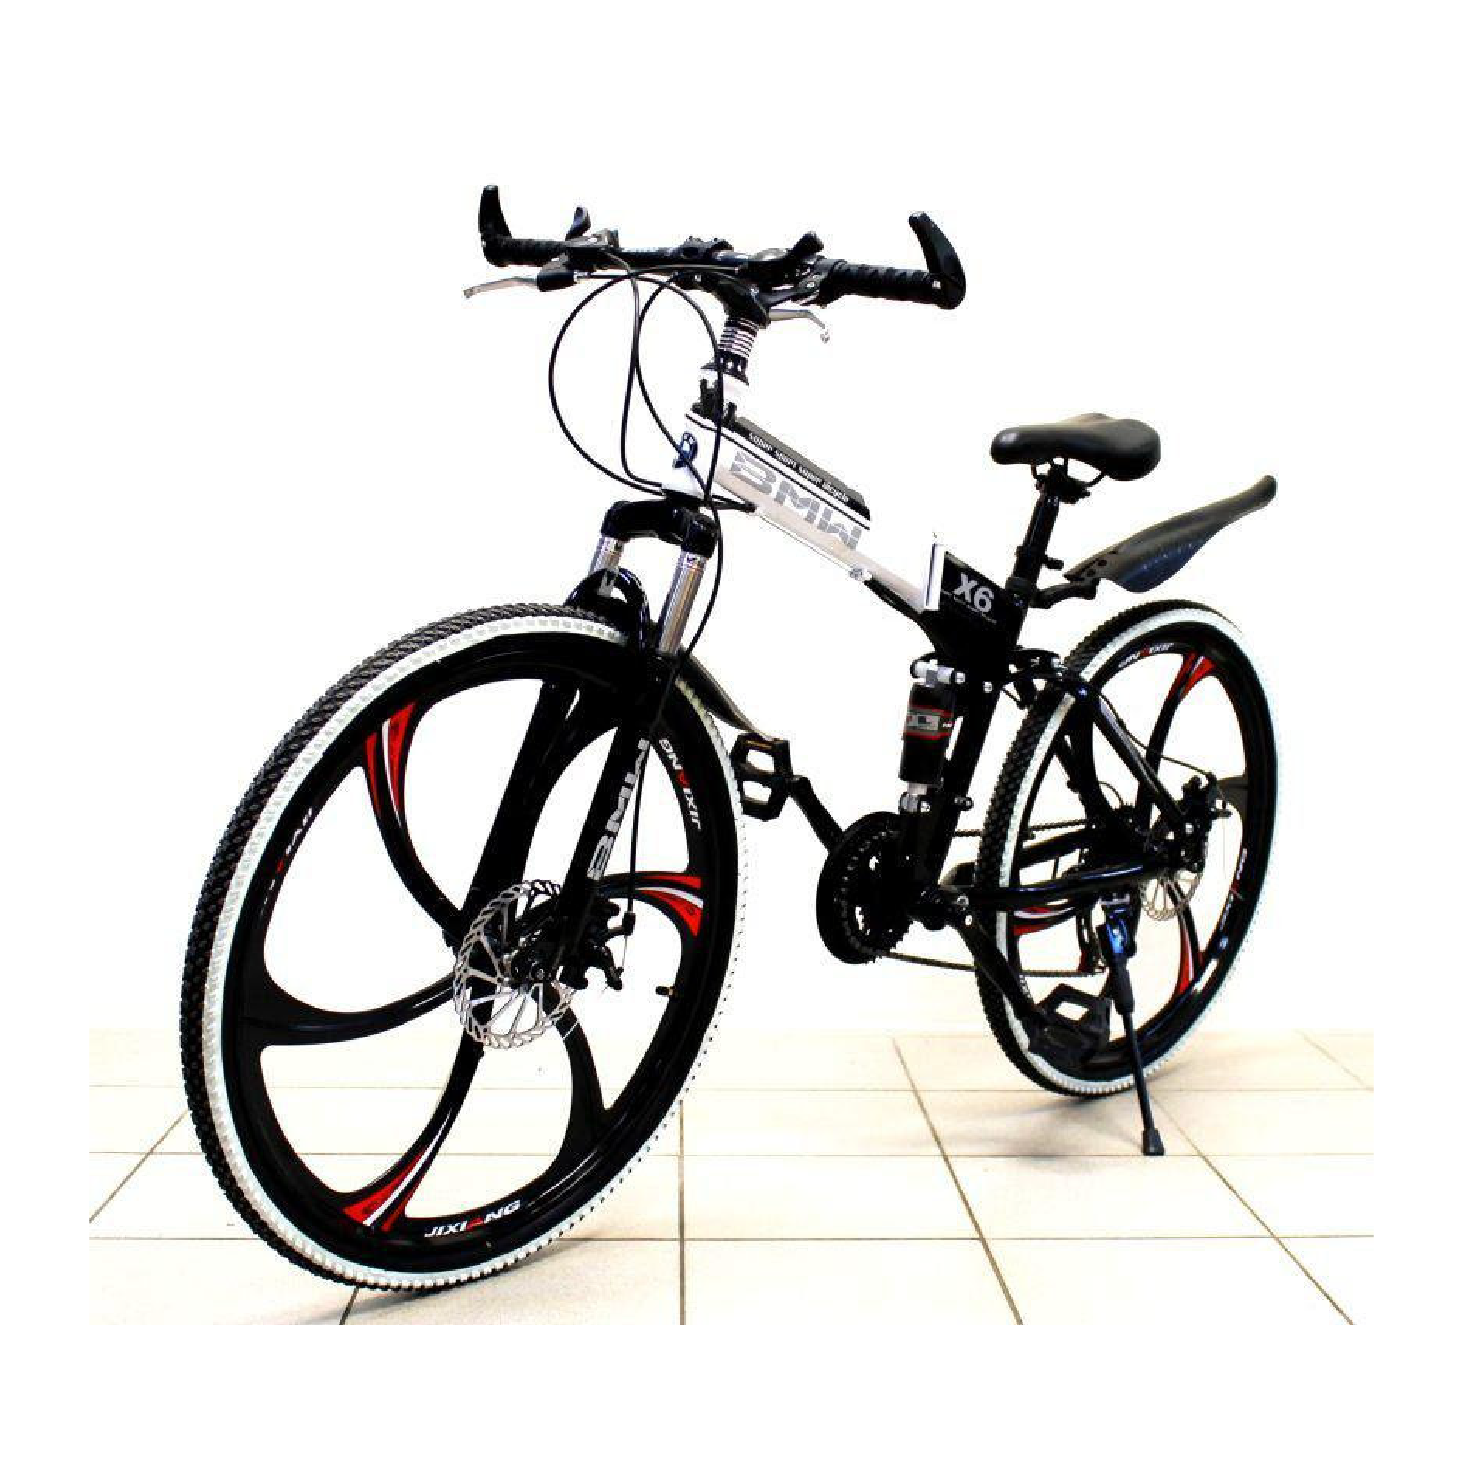 Купить велосипед в беларуси с доставкой. Велосипед BMW x6 на литых дисках. Складной велосипед БМВ на литых дисках. Велосипед на литых дисках BMW белый складной. Складной велосипед черный.